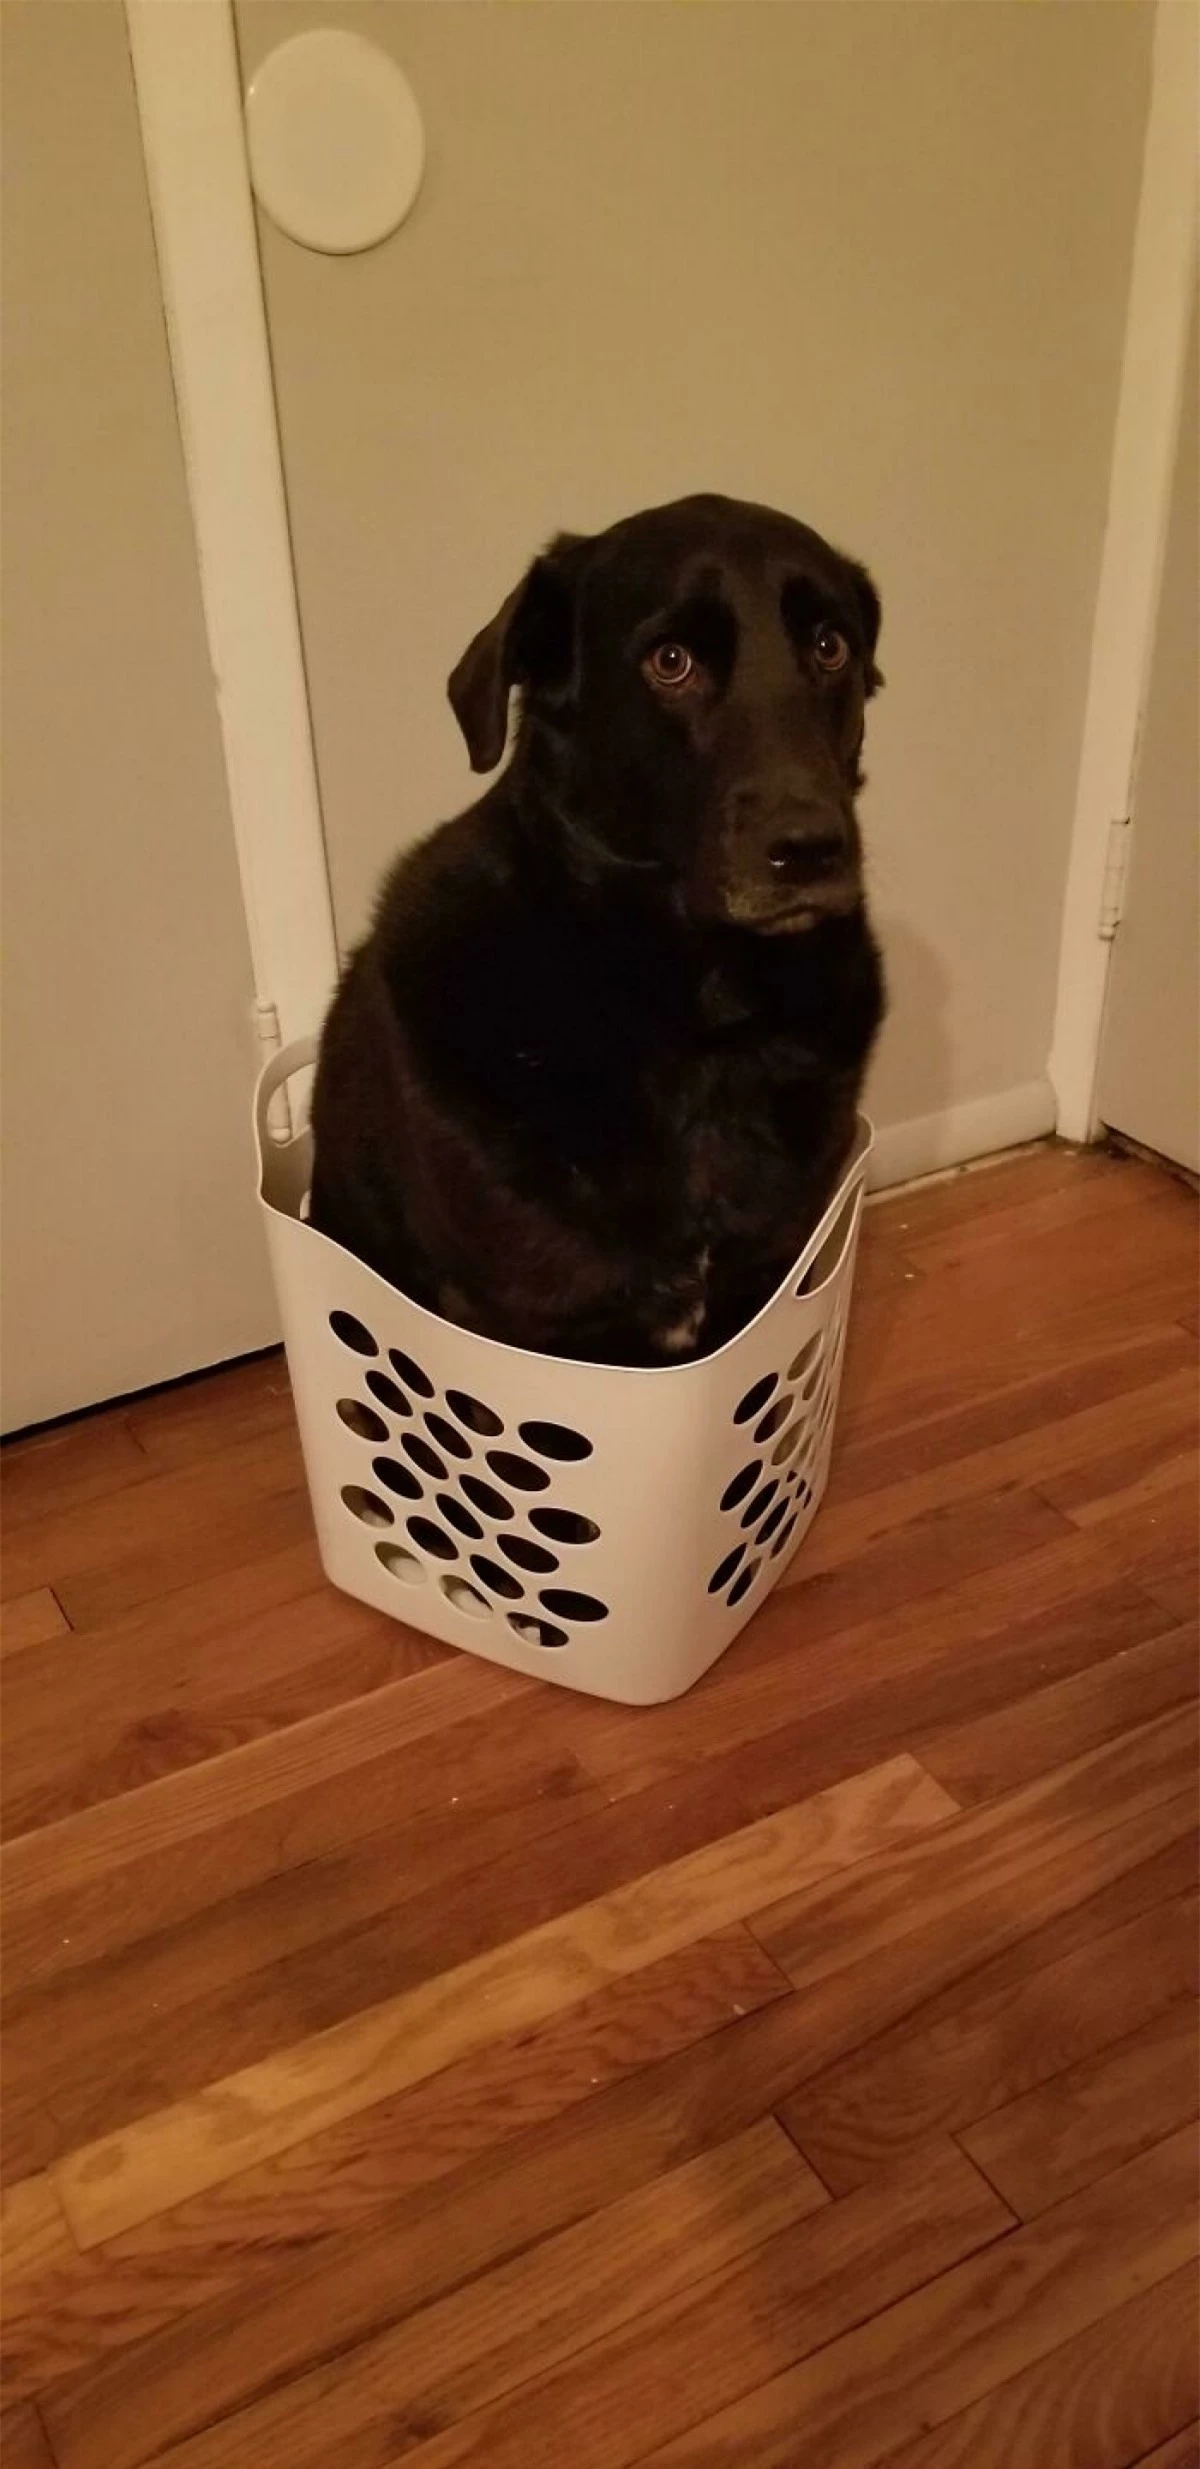 Chú chó với gương mặt buồn rầu vì làm kiểu gì cũng không thể giấu mình vào trong giỏ.